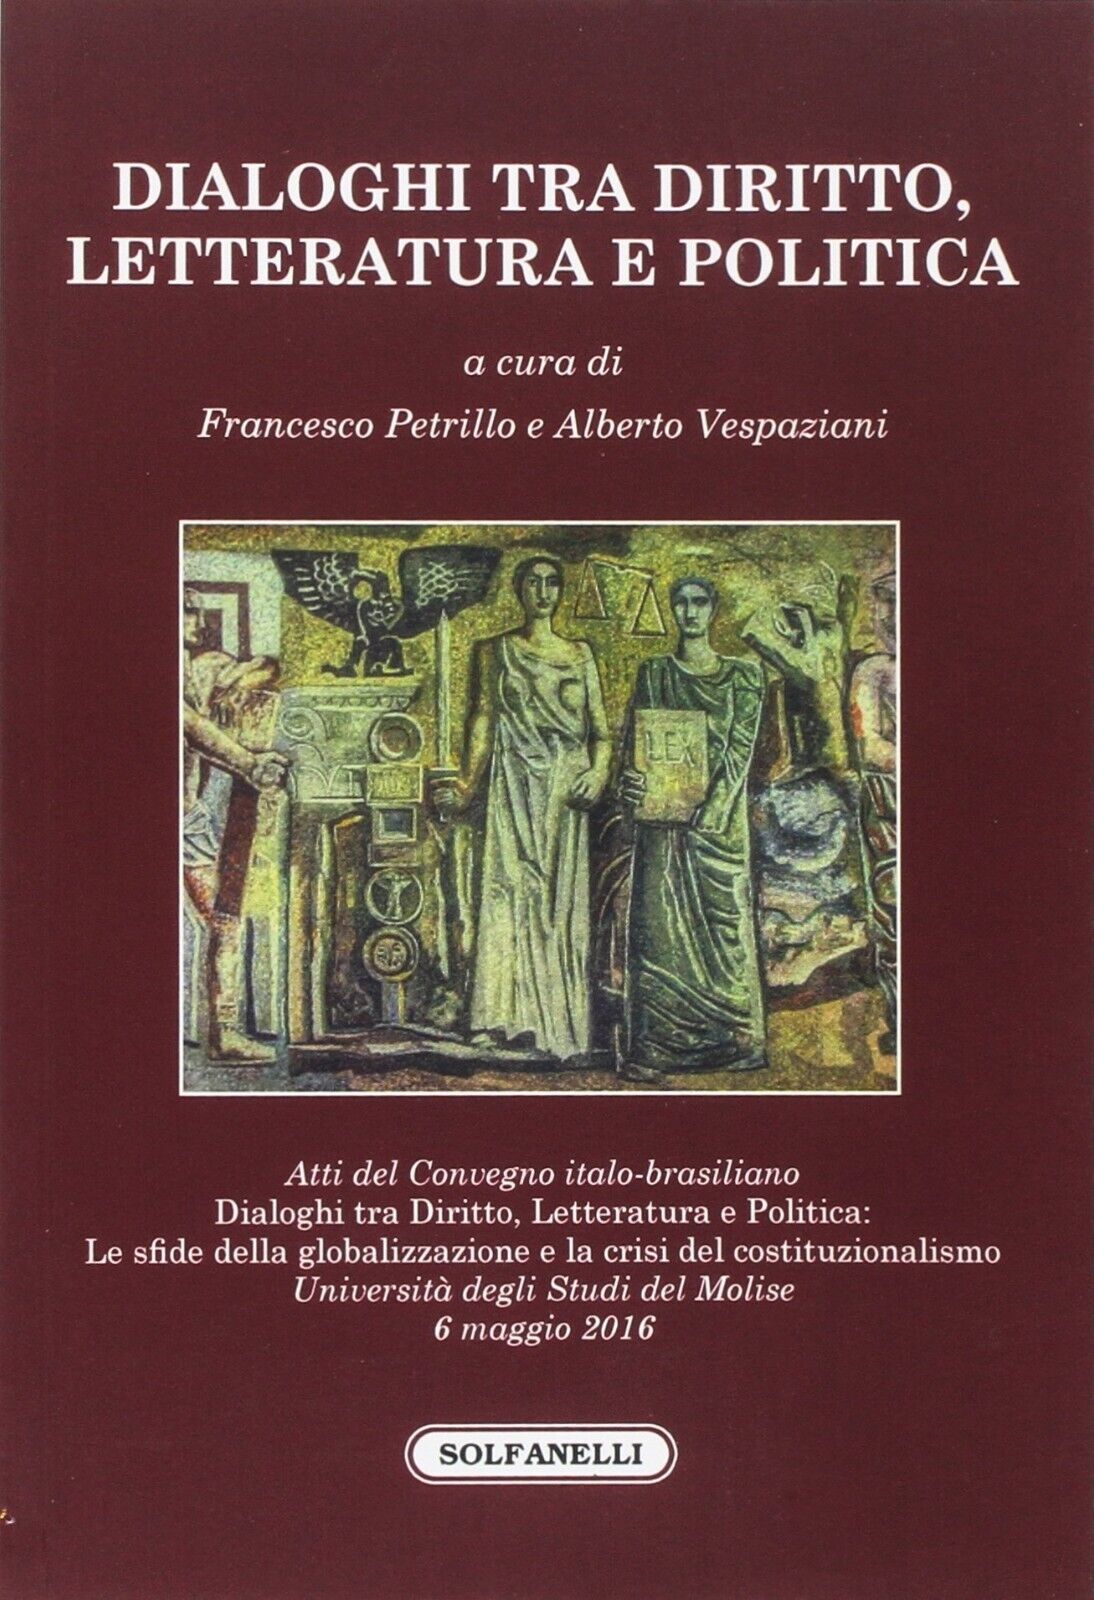  Dialoghi tra diritto, letteratura e politica. Atti del Convegno italo-brasilian